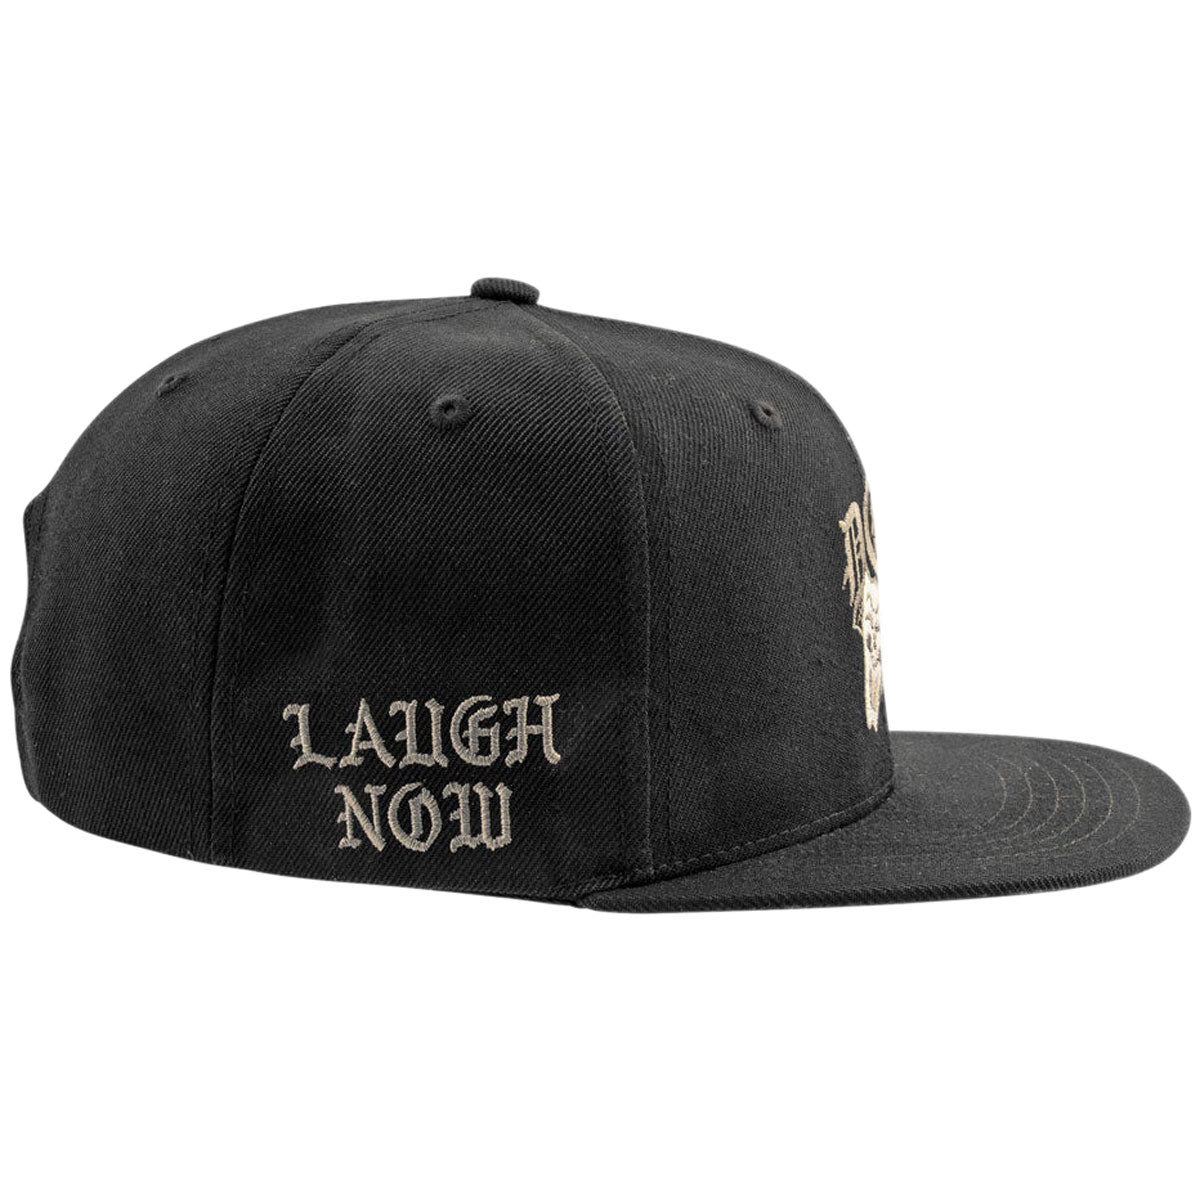 DGK Laugh Now Snapback Hat - Black image 2